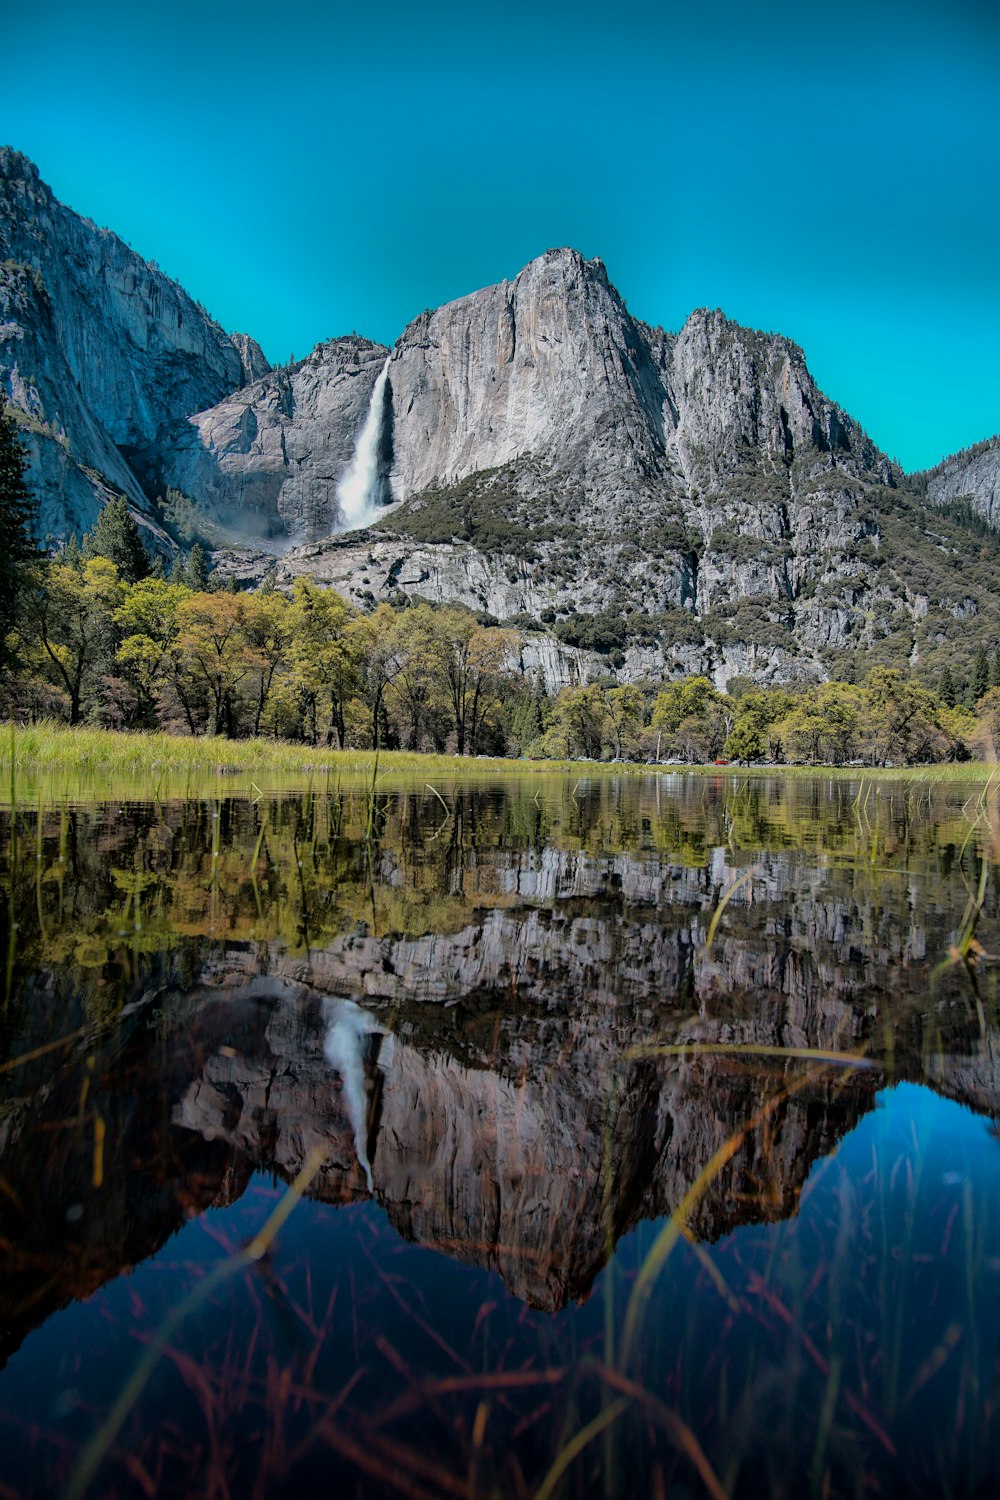 cuerpo de agua tranquilo con vistas a las cascadas y la montaña de roca gris bajo el cielo azul durante el día